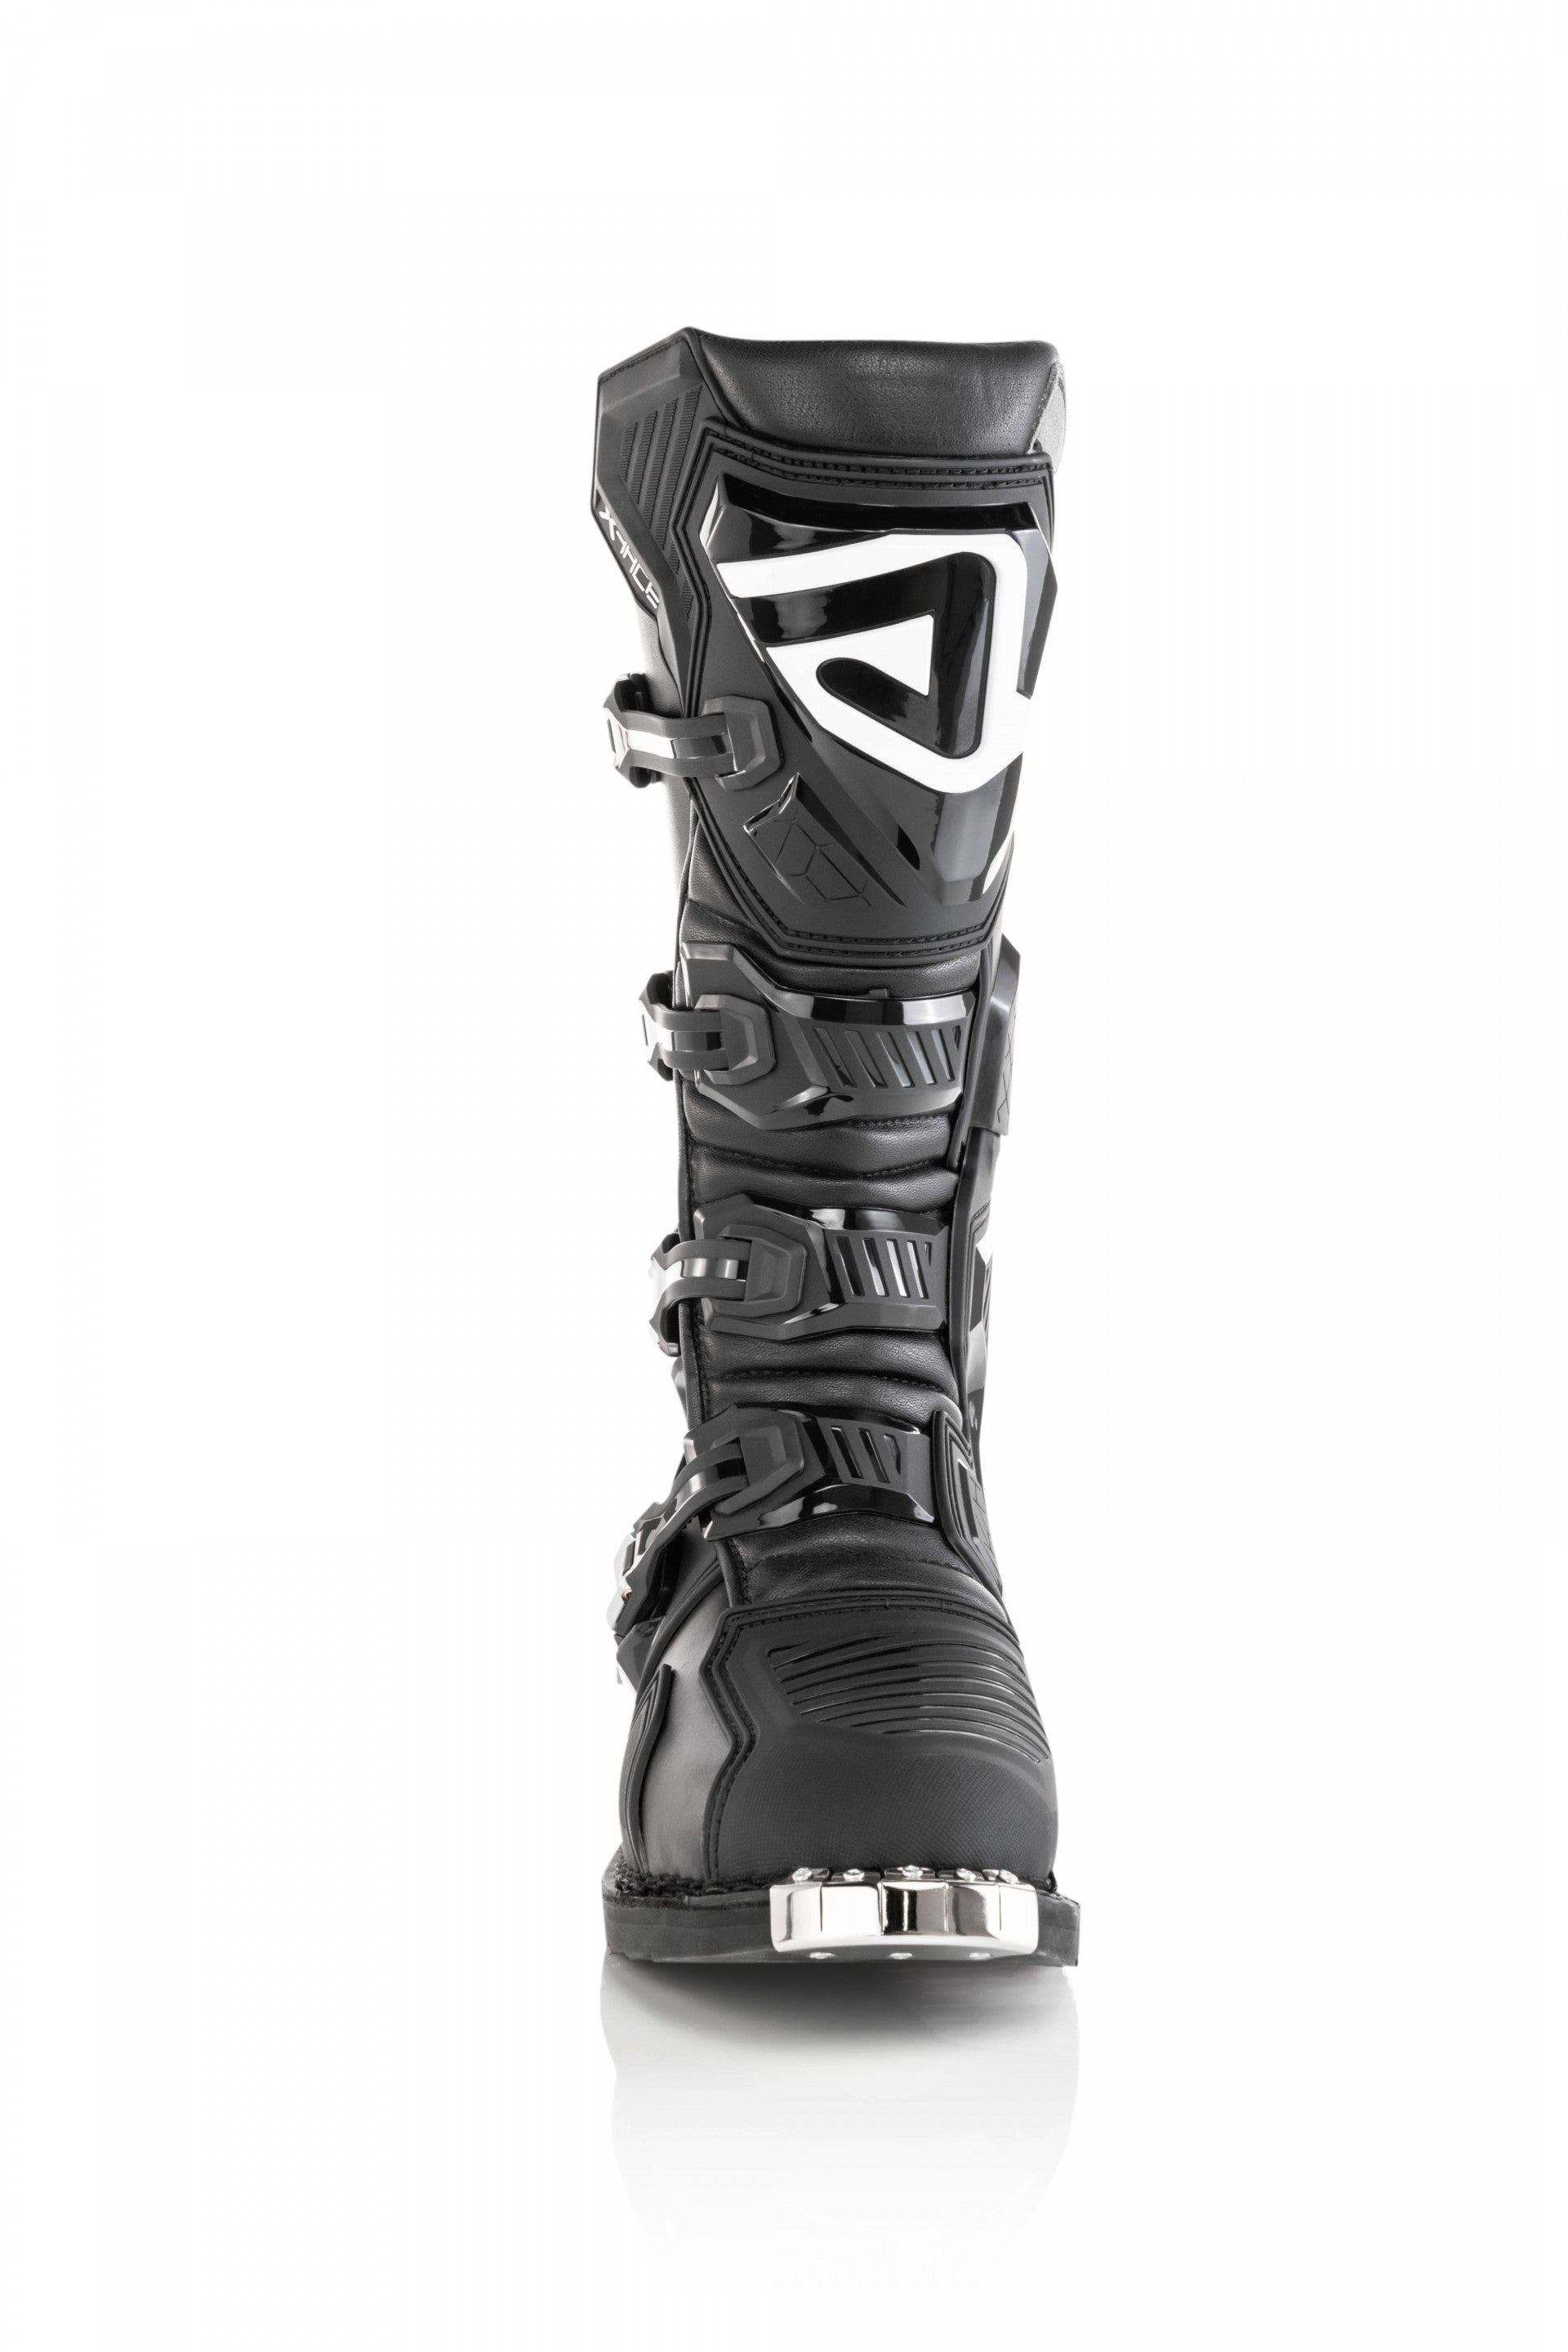 Acerbis X-Race MX Boots Black